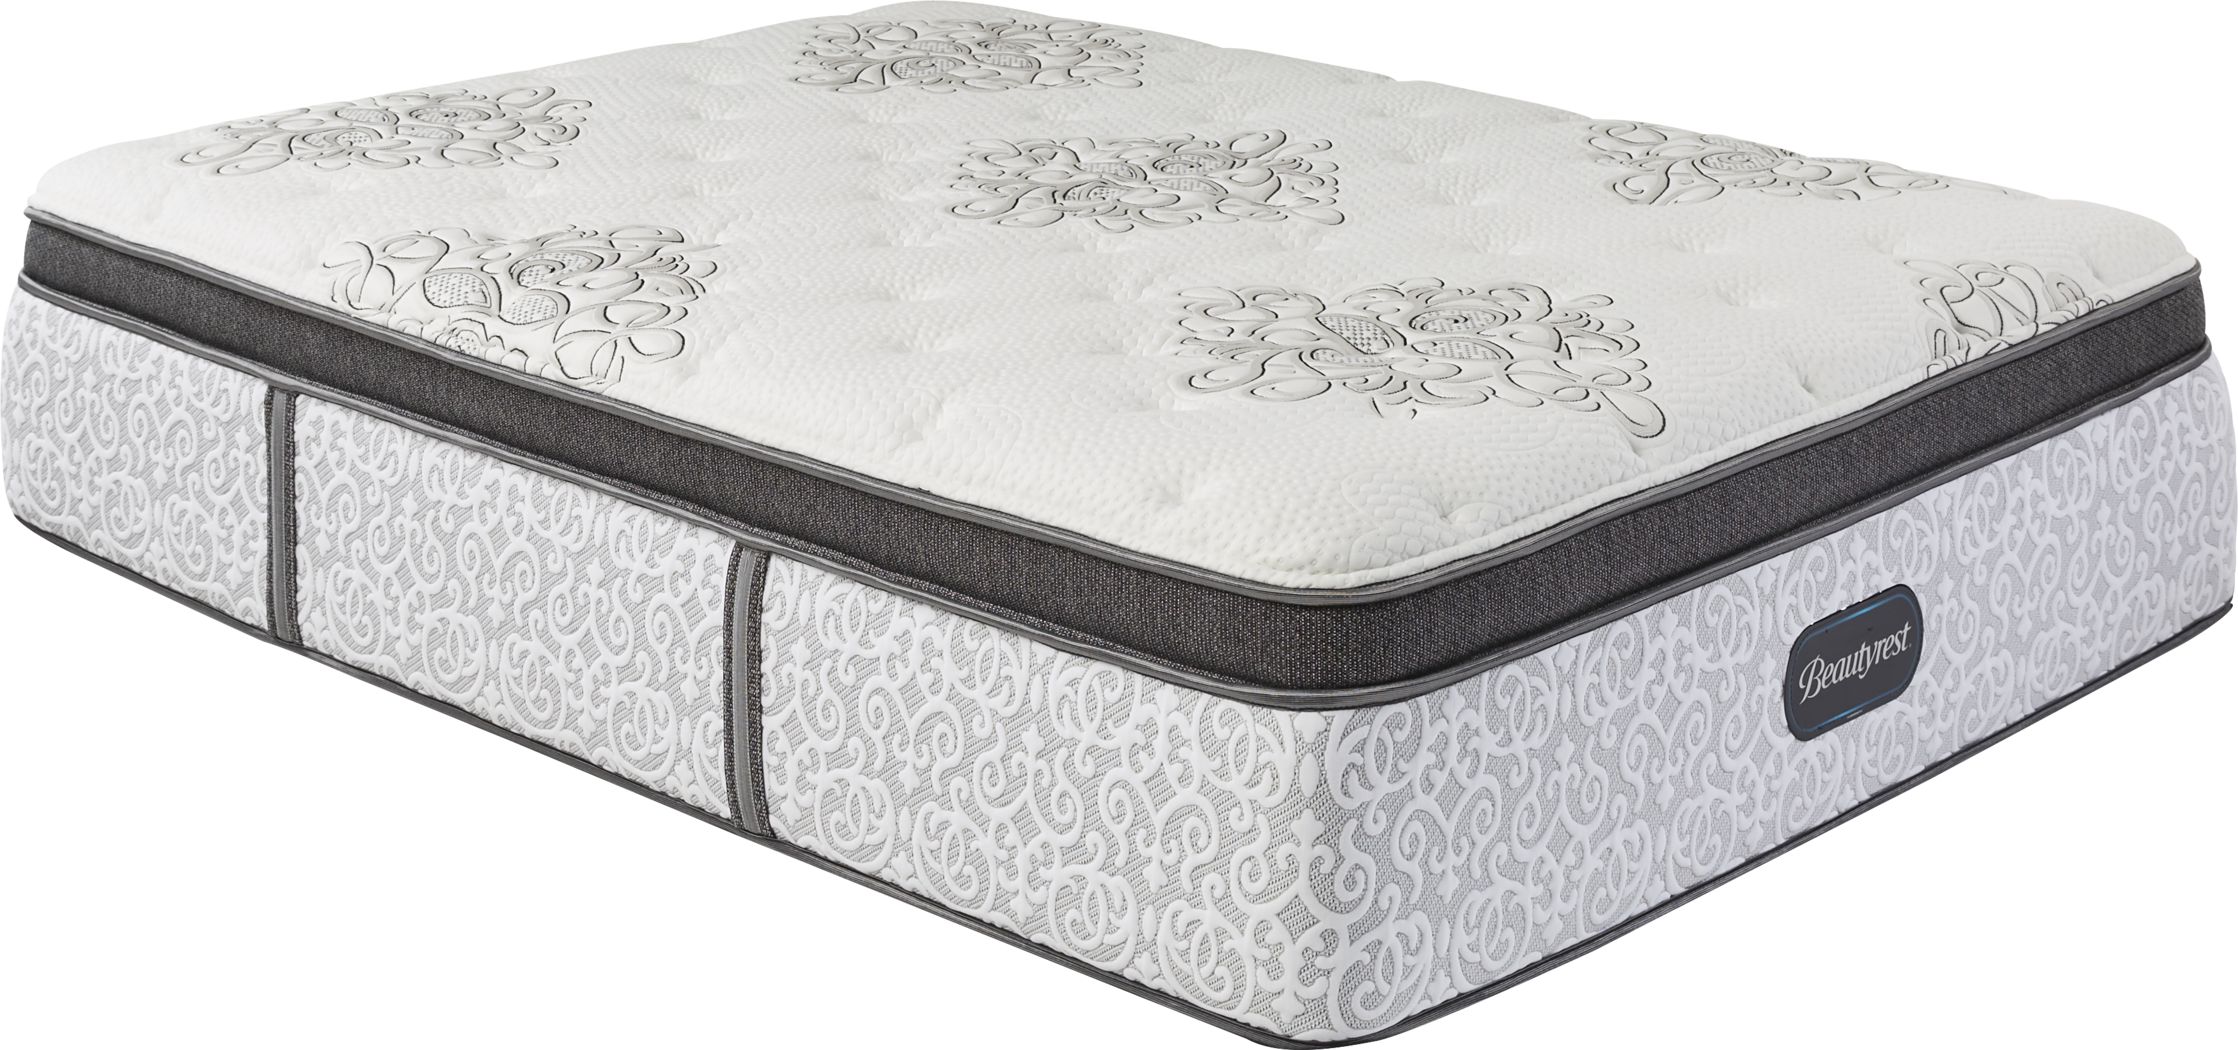 beautyrest legend extra firm mattress